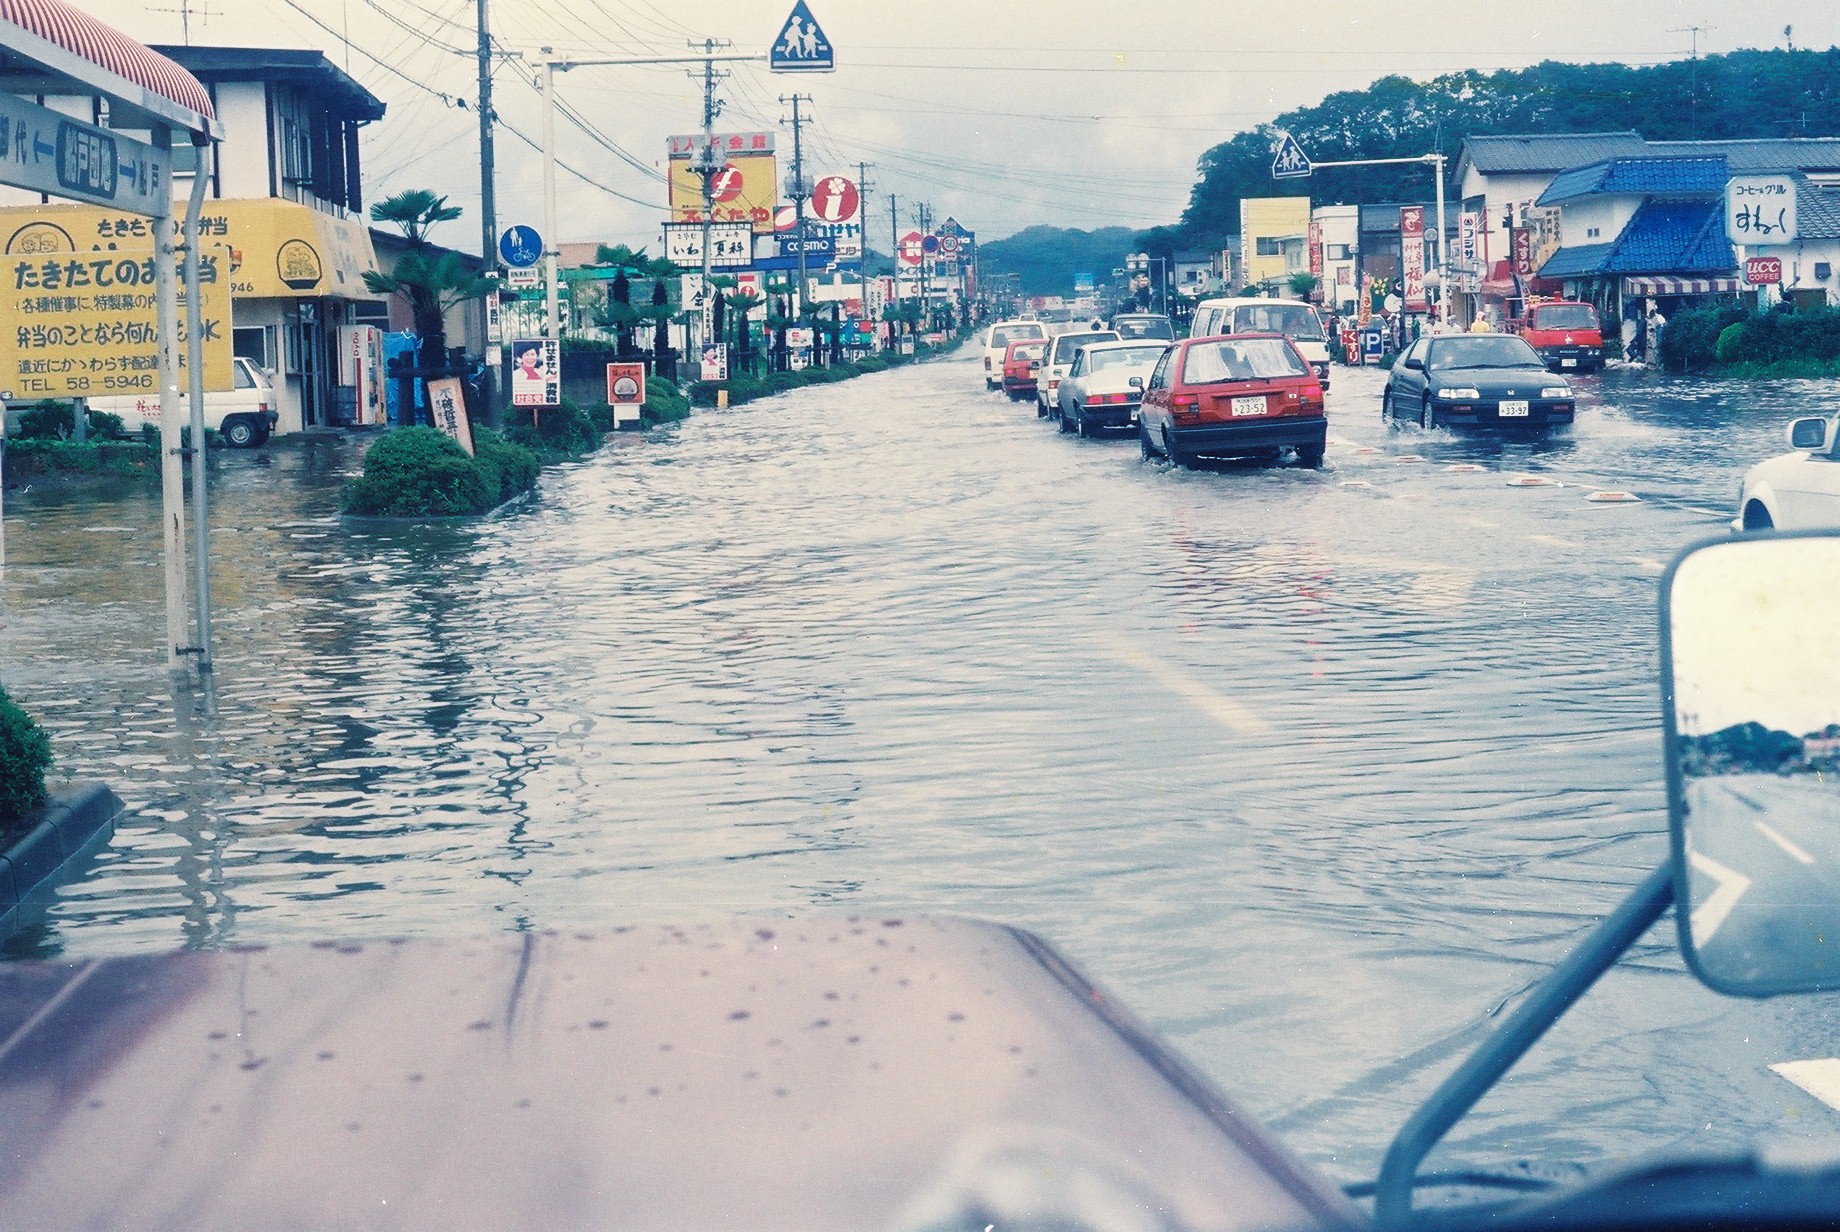 鹿島町船戸の台風による道路冠水状況を小名浜方向から見る(昭和63年10月、いわき市撮影)